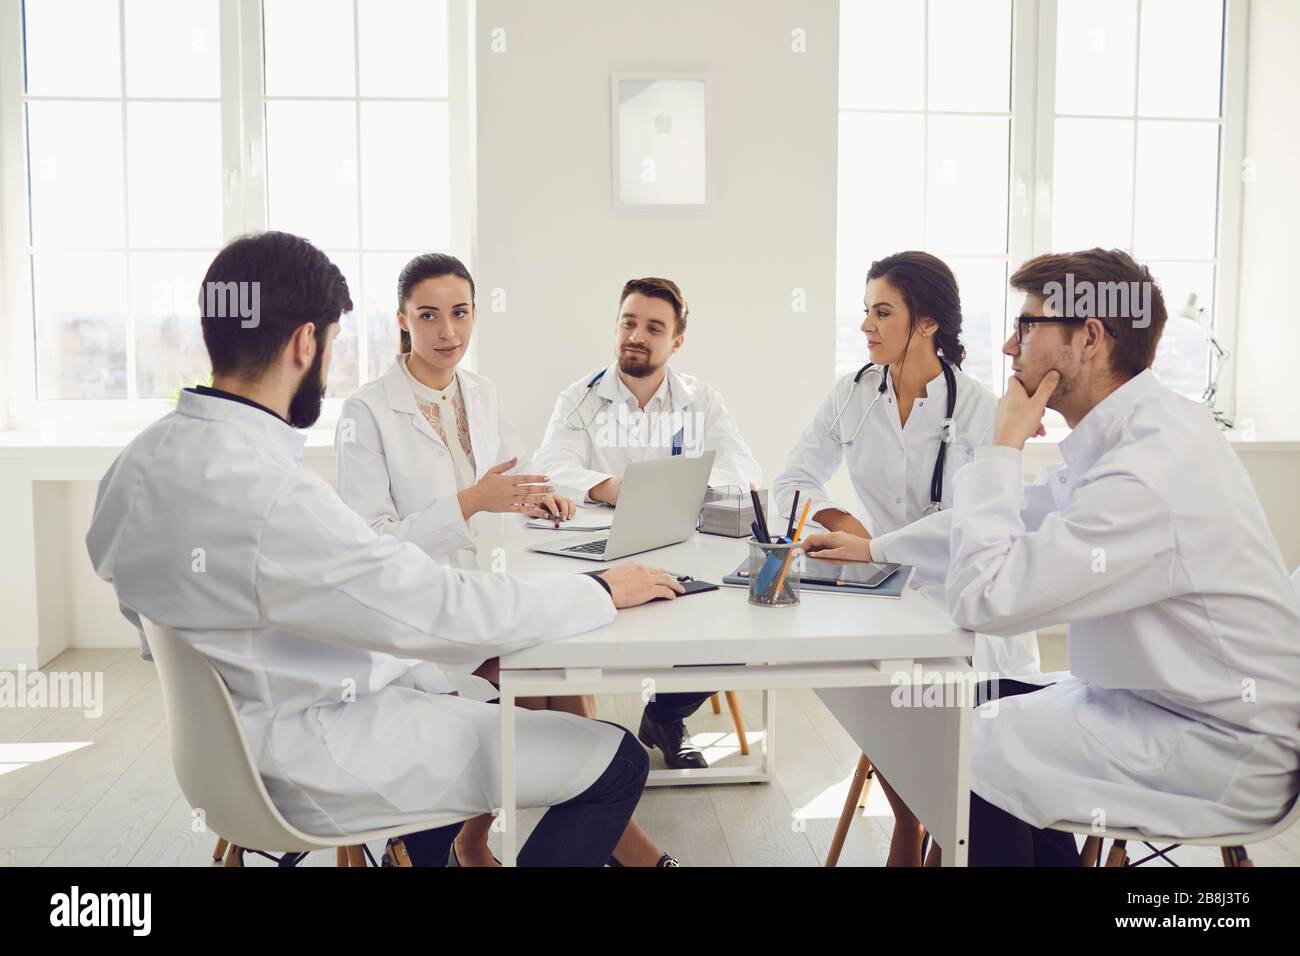 Groupe de médecins praticiens lors d'une réunion discuter du diagnostic d'un patient debout dans un bureau de clinique. Banque D'Images